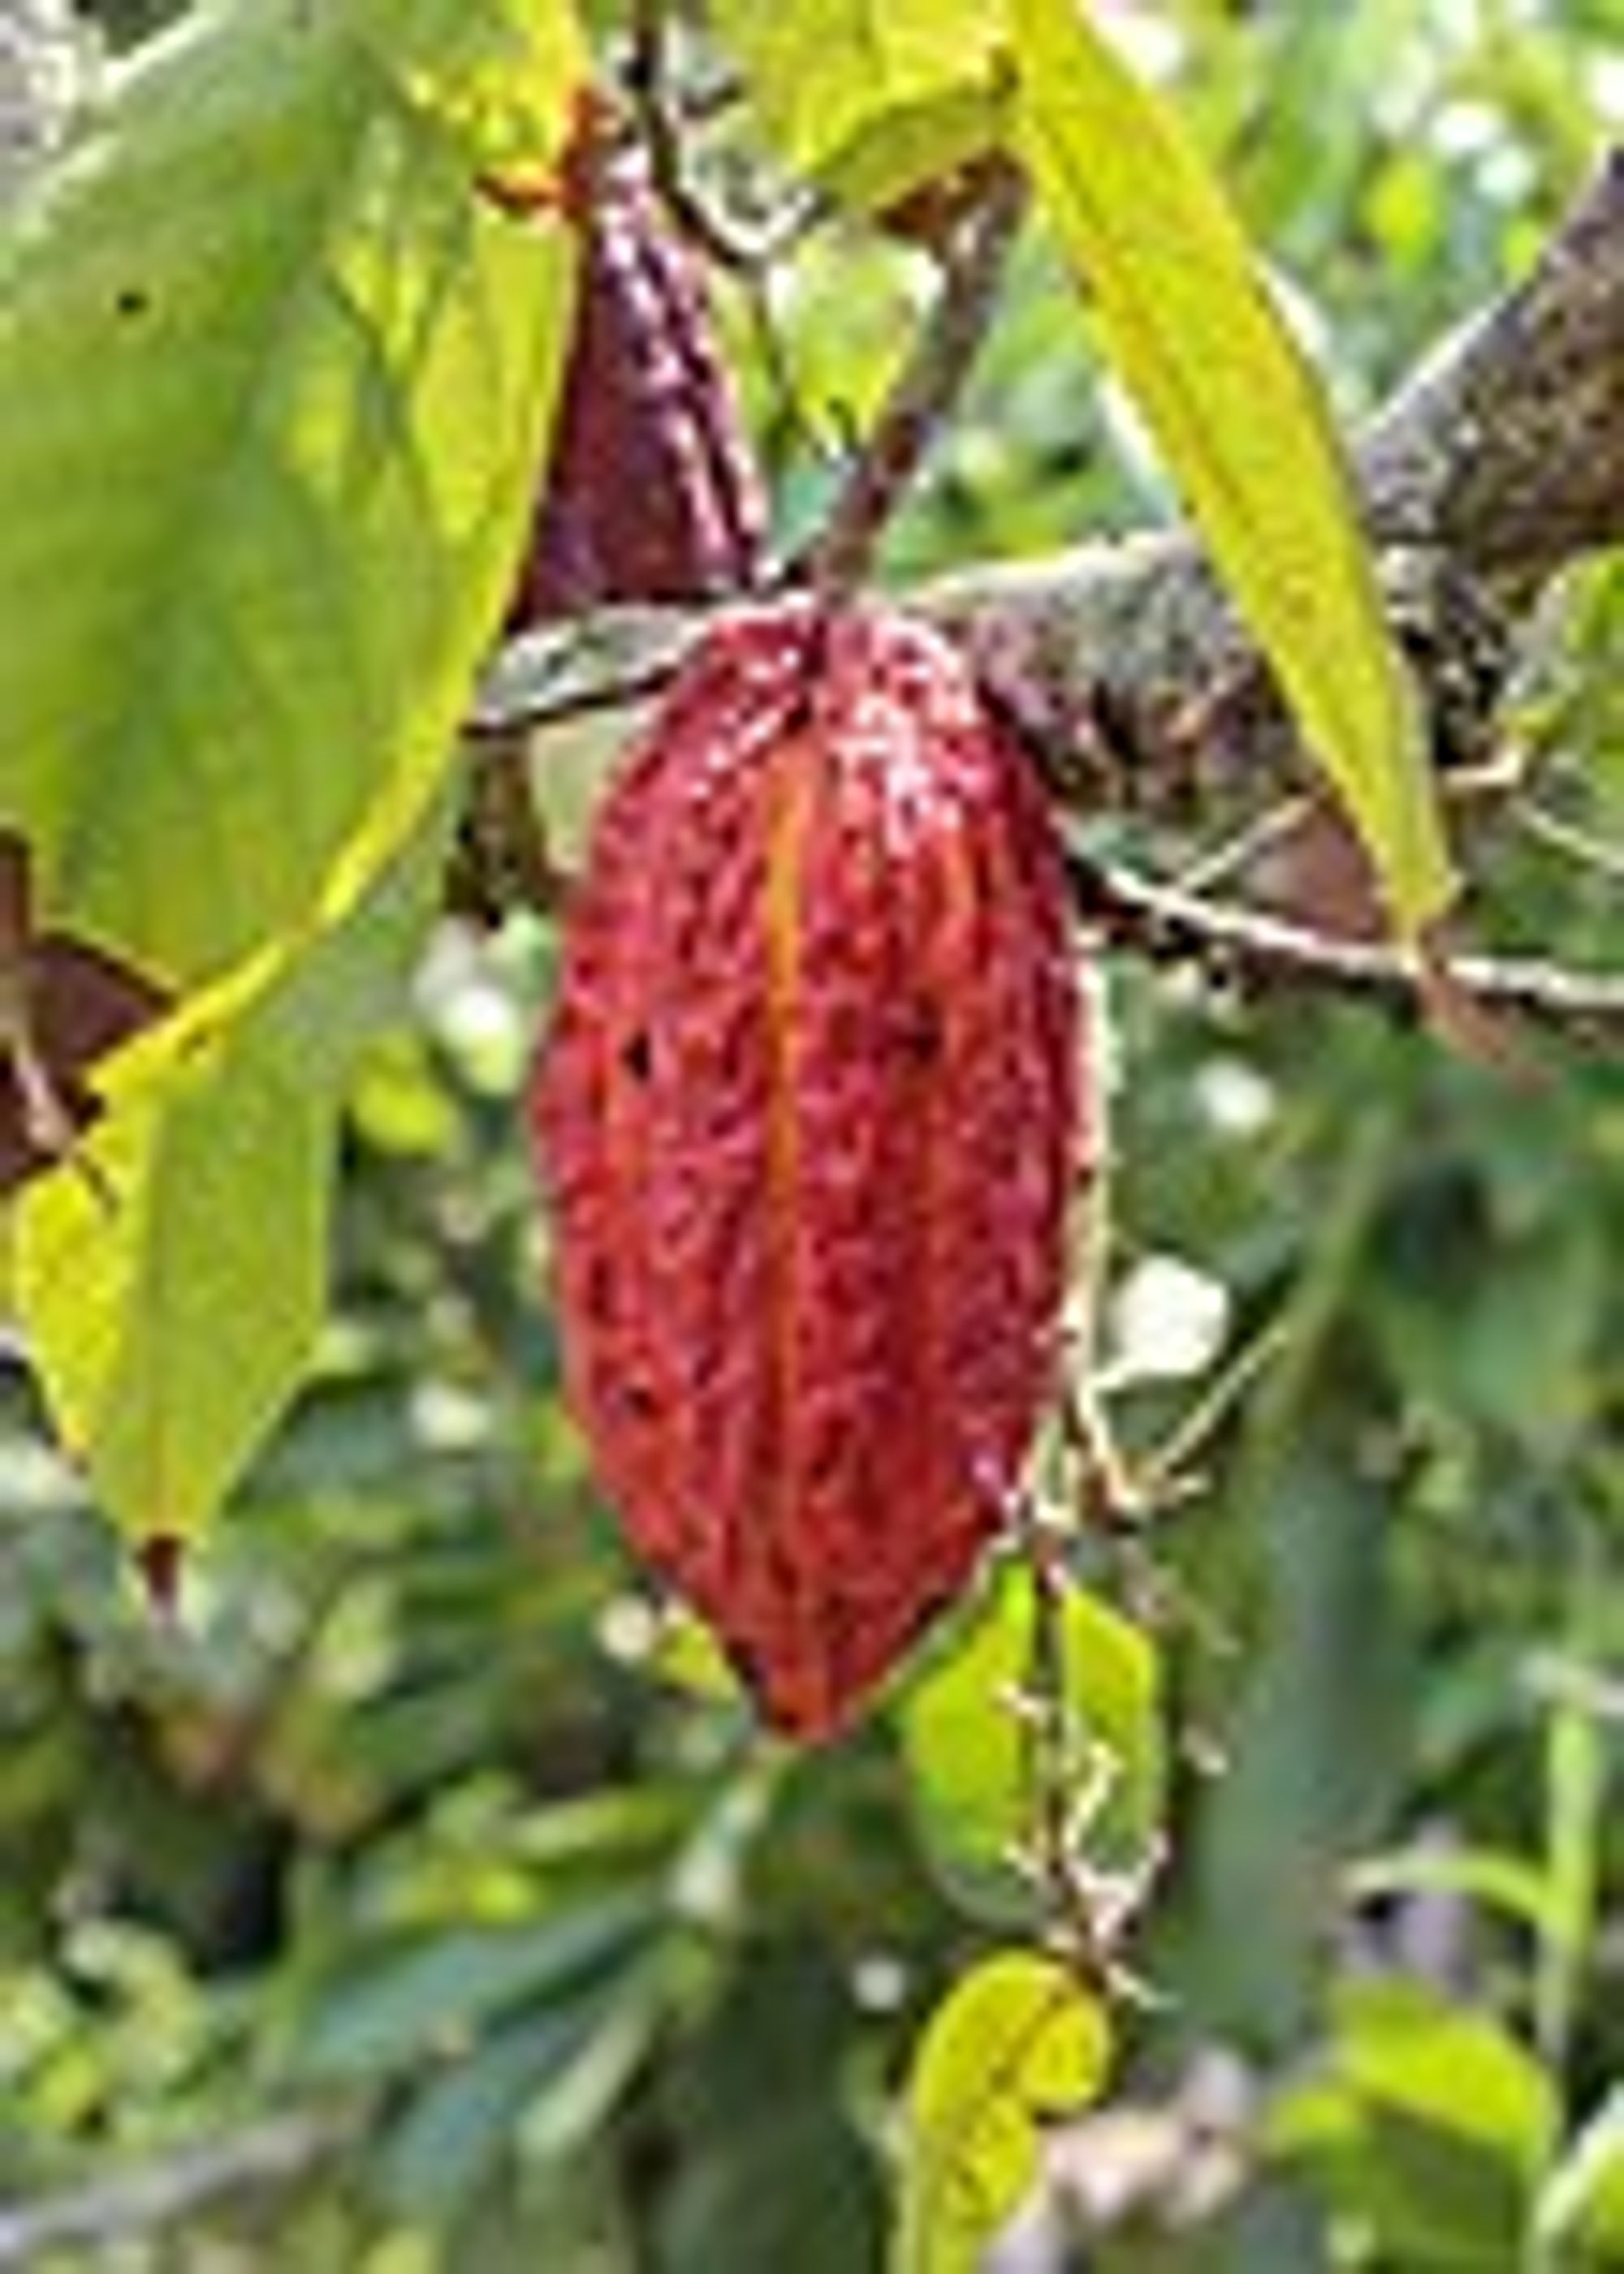 Cocoa production in Nigeria - Wikipedia